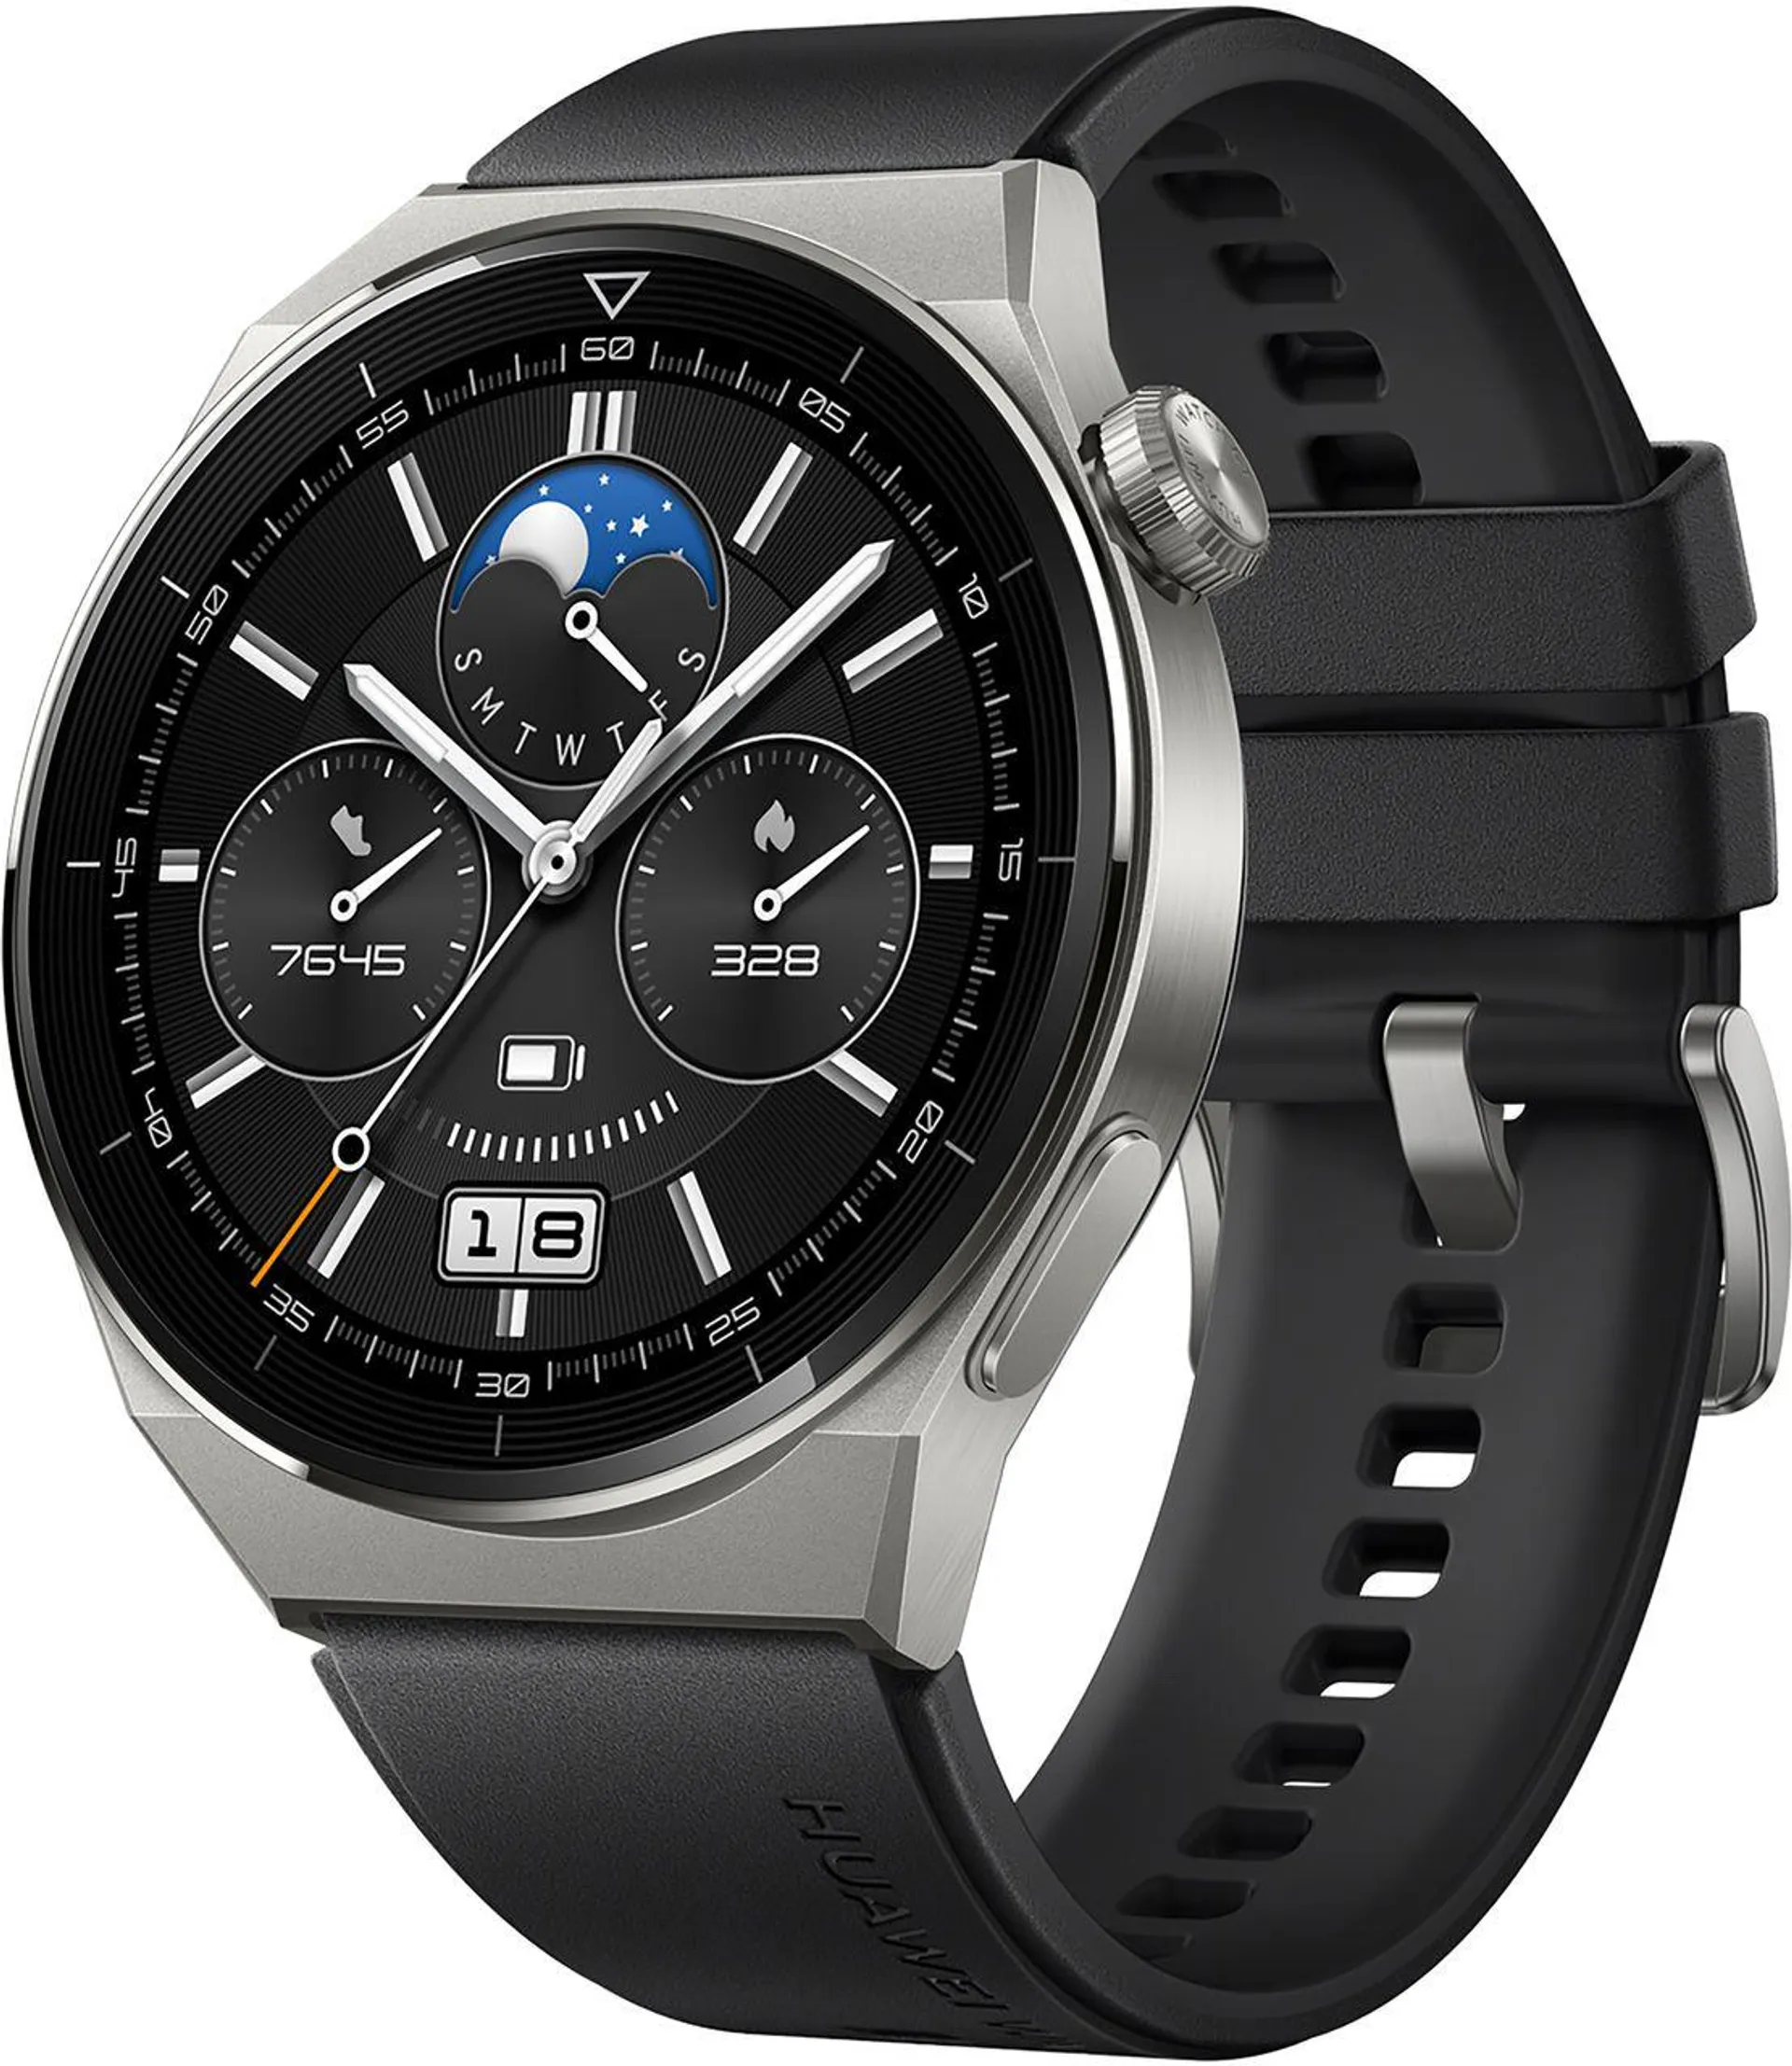 HUAWEI GT 3 Pro 4G Smart Watch - Black